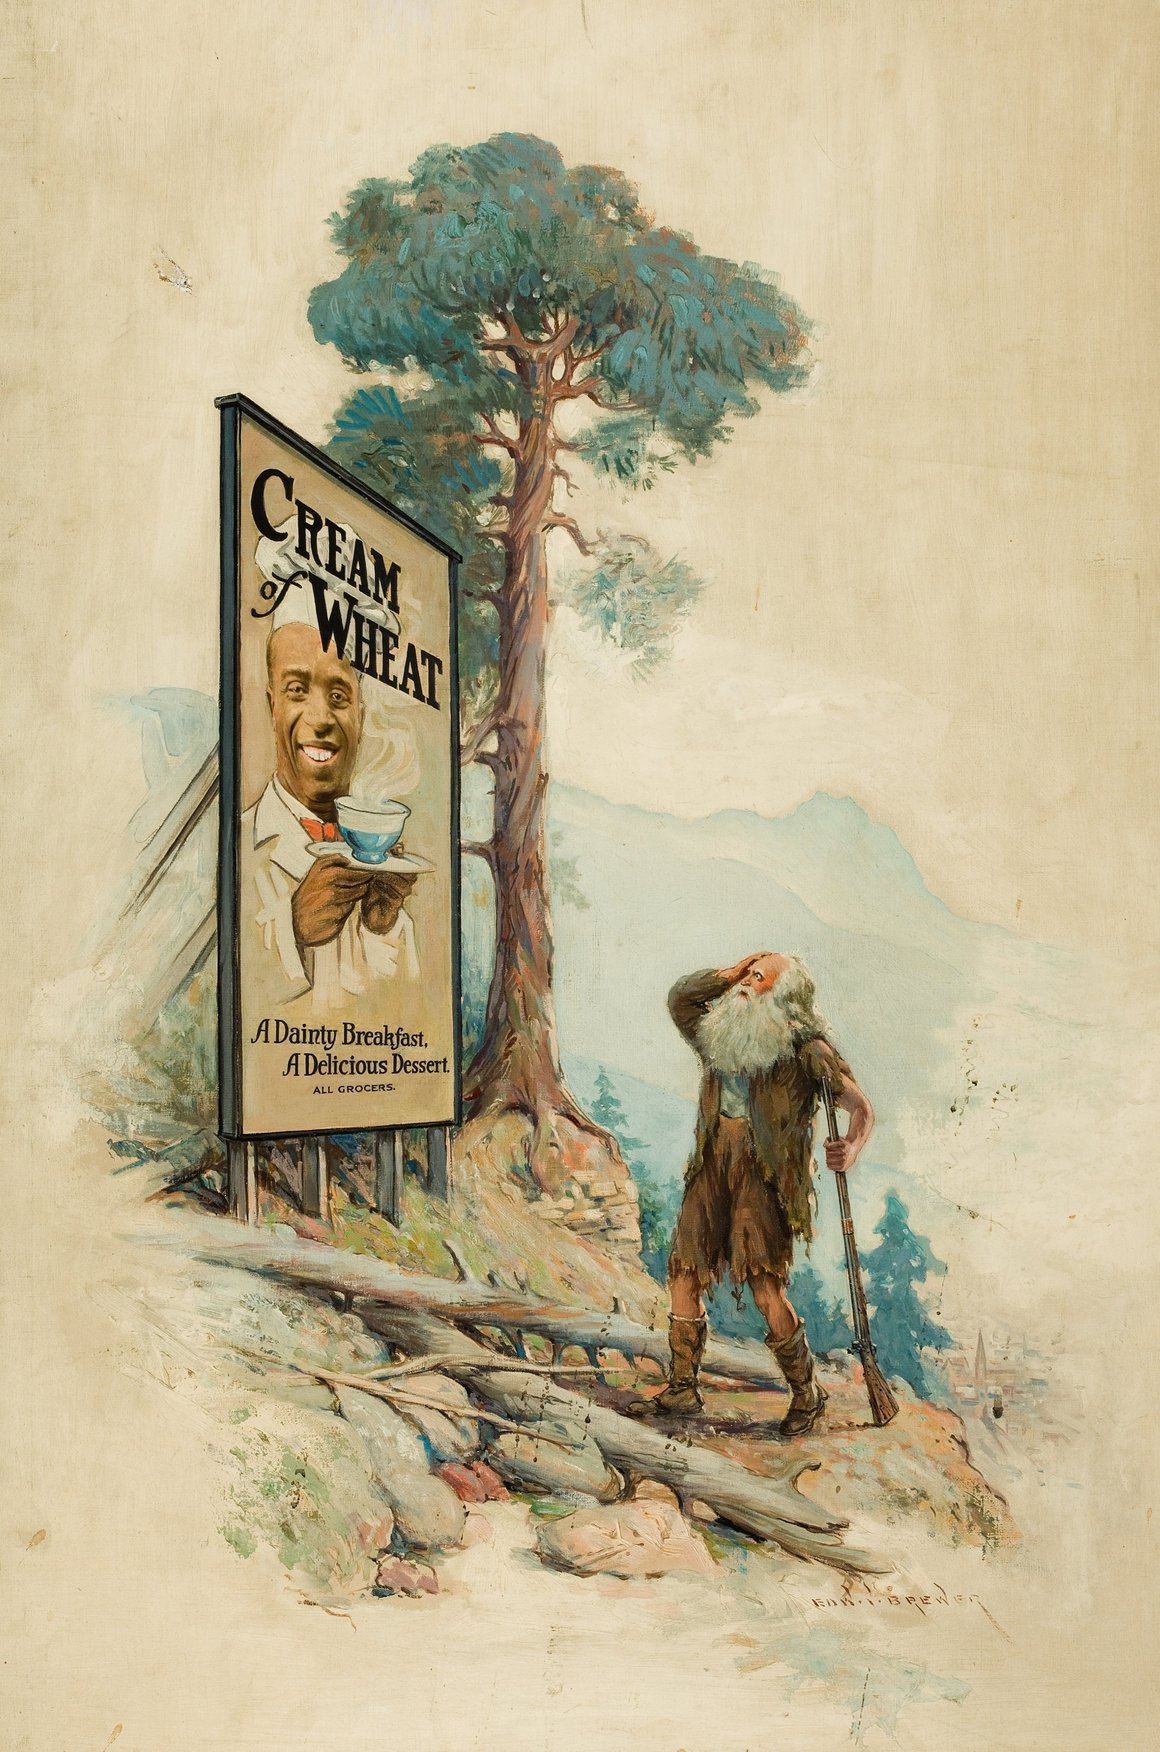 Rip Van Winkle, Cream of Wheat advertisement (1915)